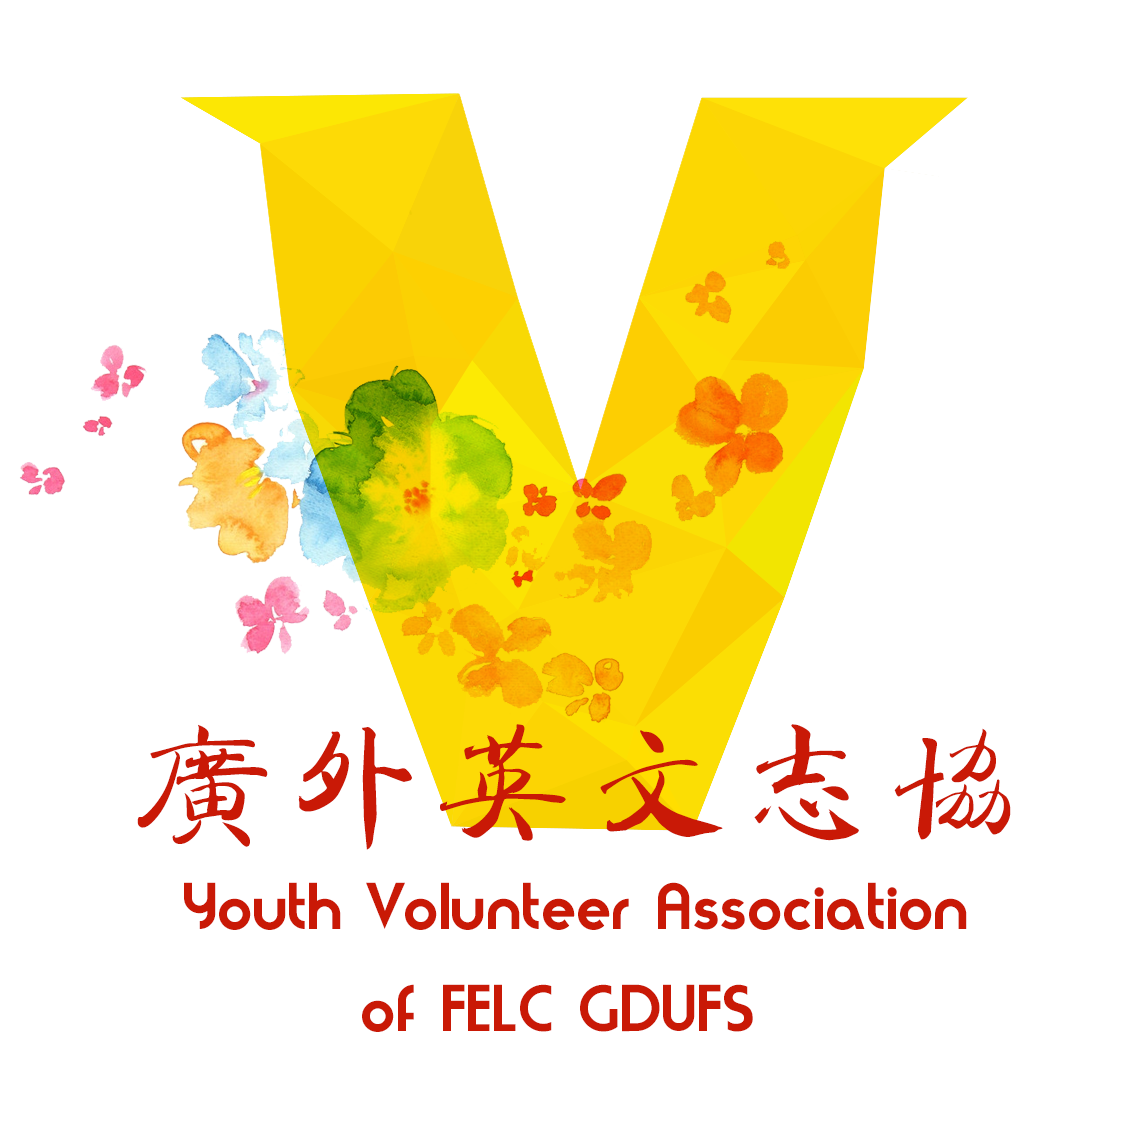 廣東外語外貿大學英語語言文化學院青年志願者協會